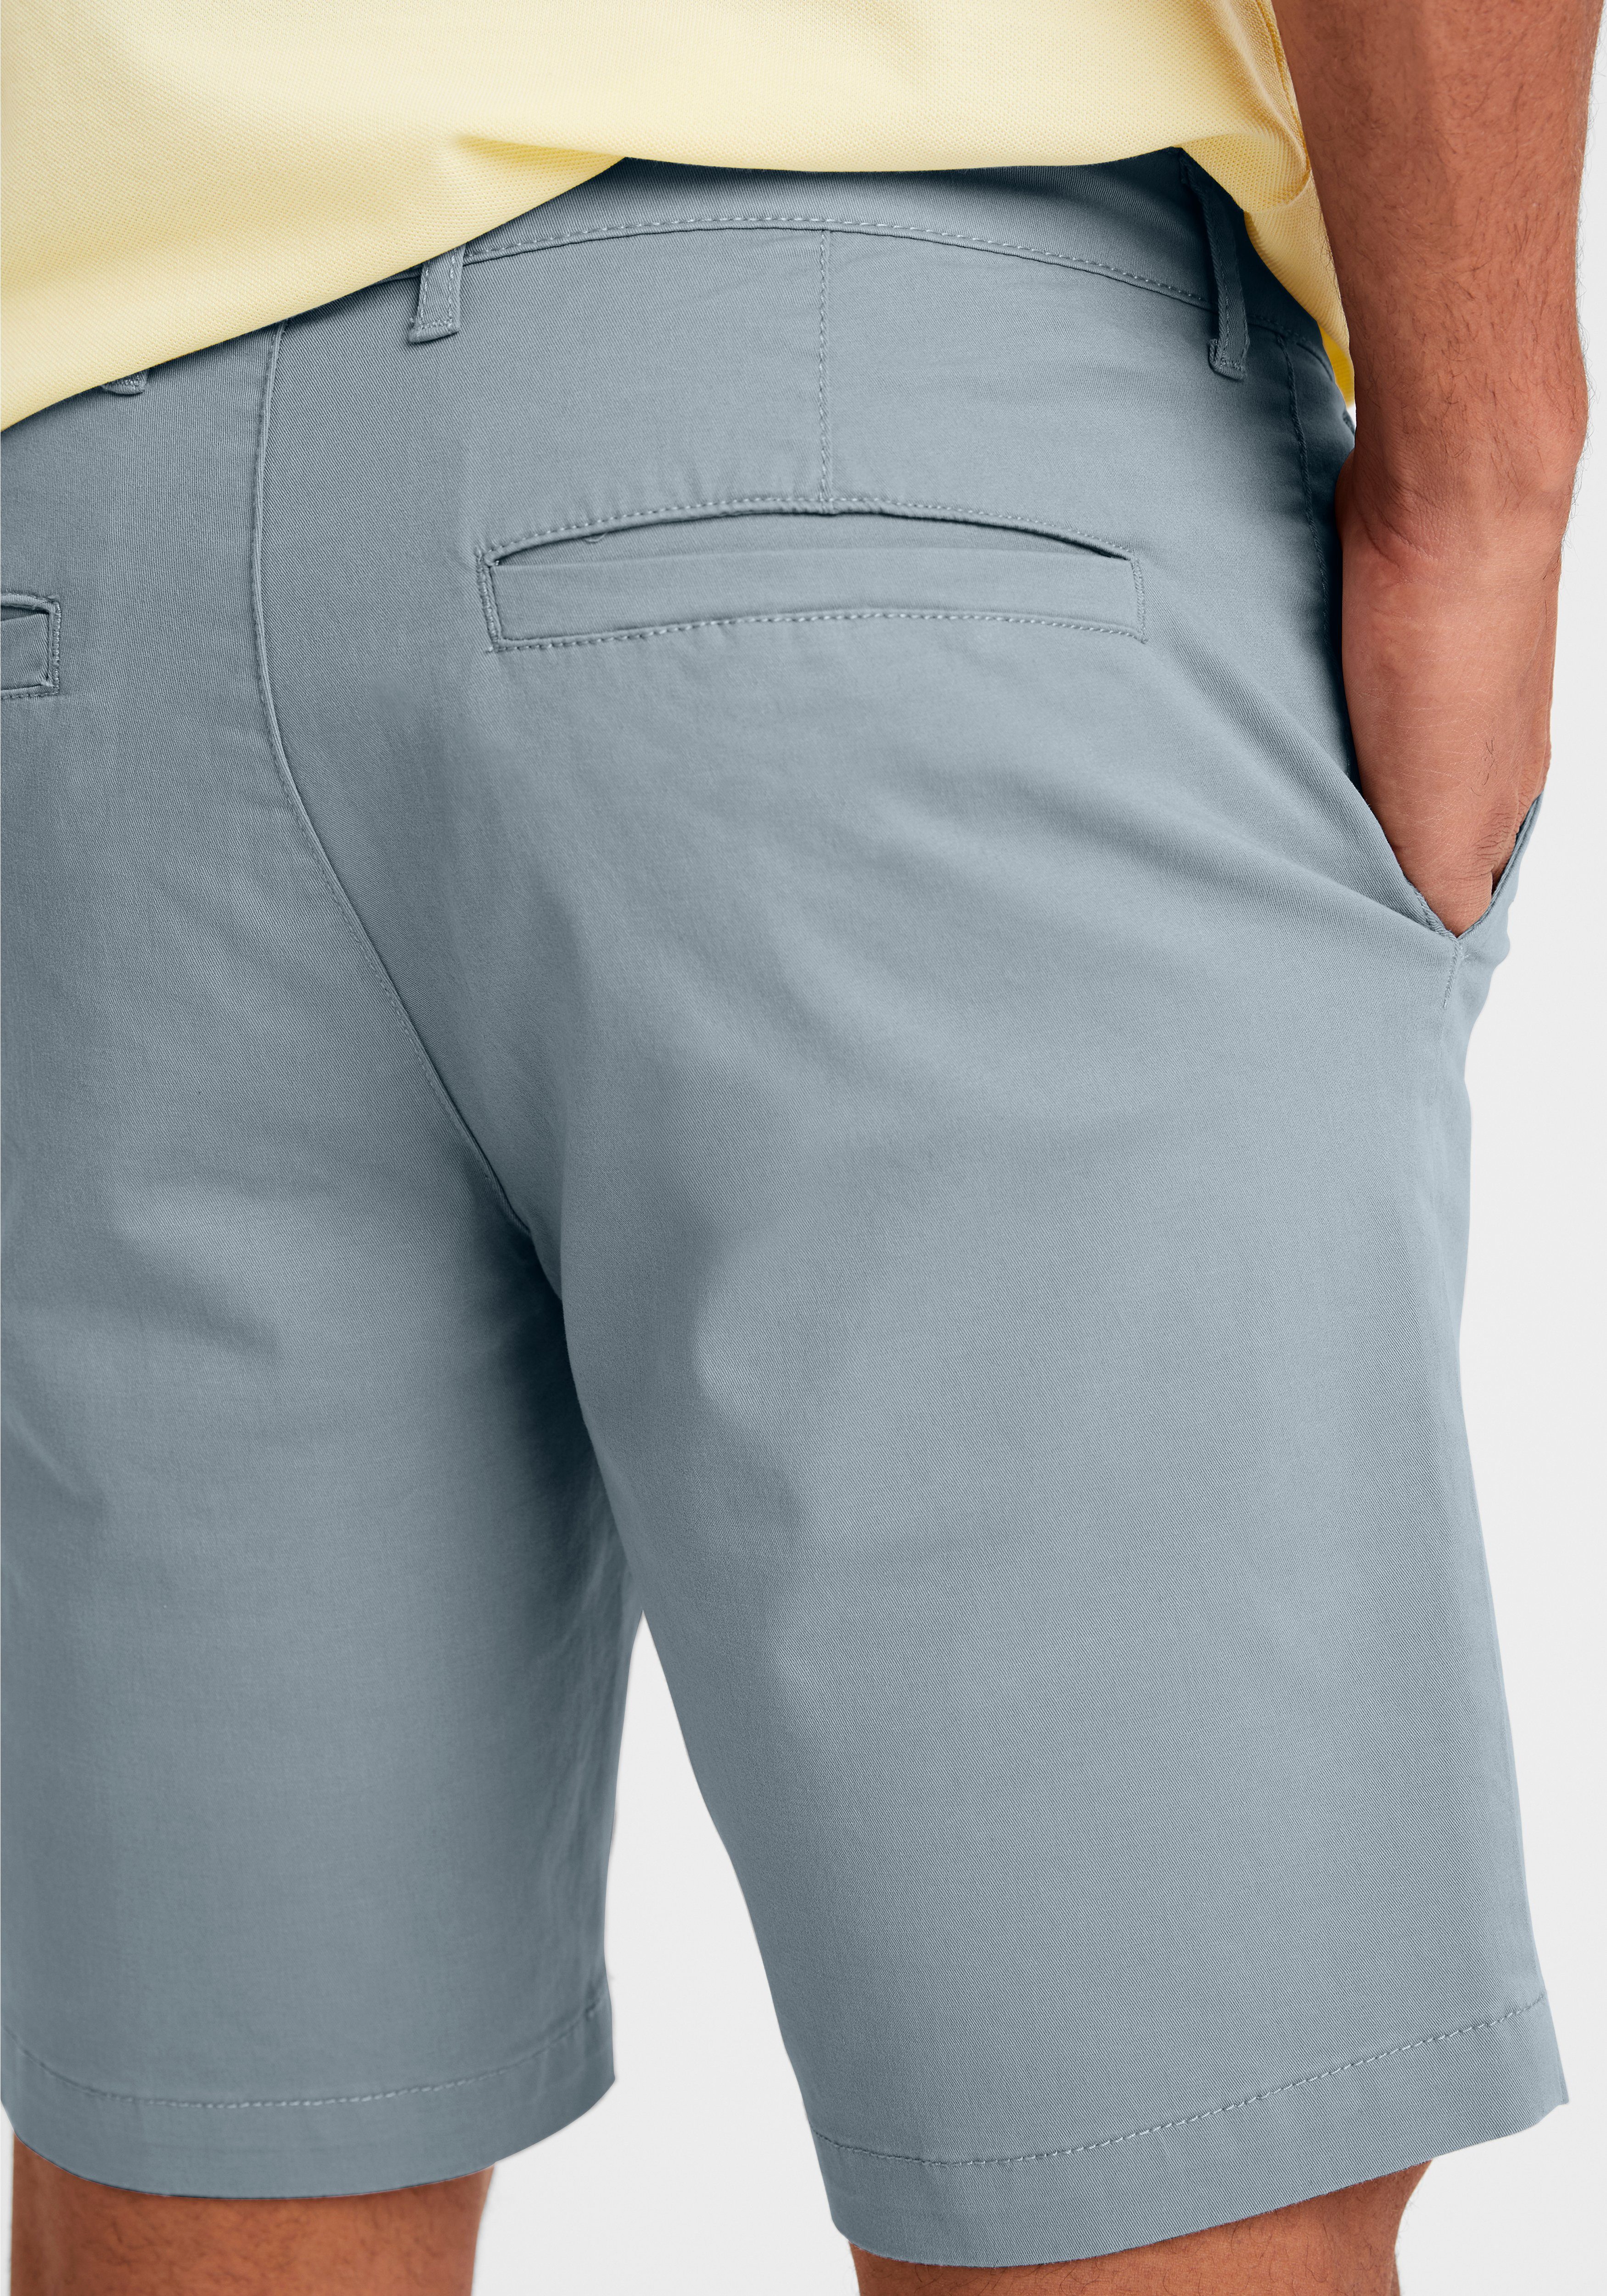 H.I.S aus Shorts graublau Baumwoll-Qualität elastischer